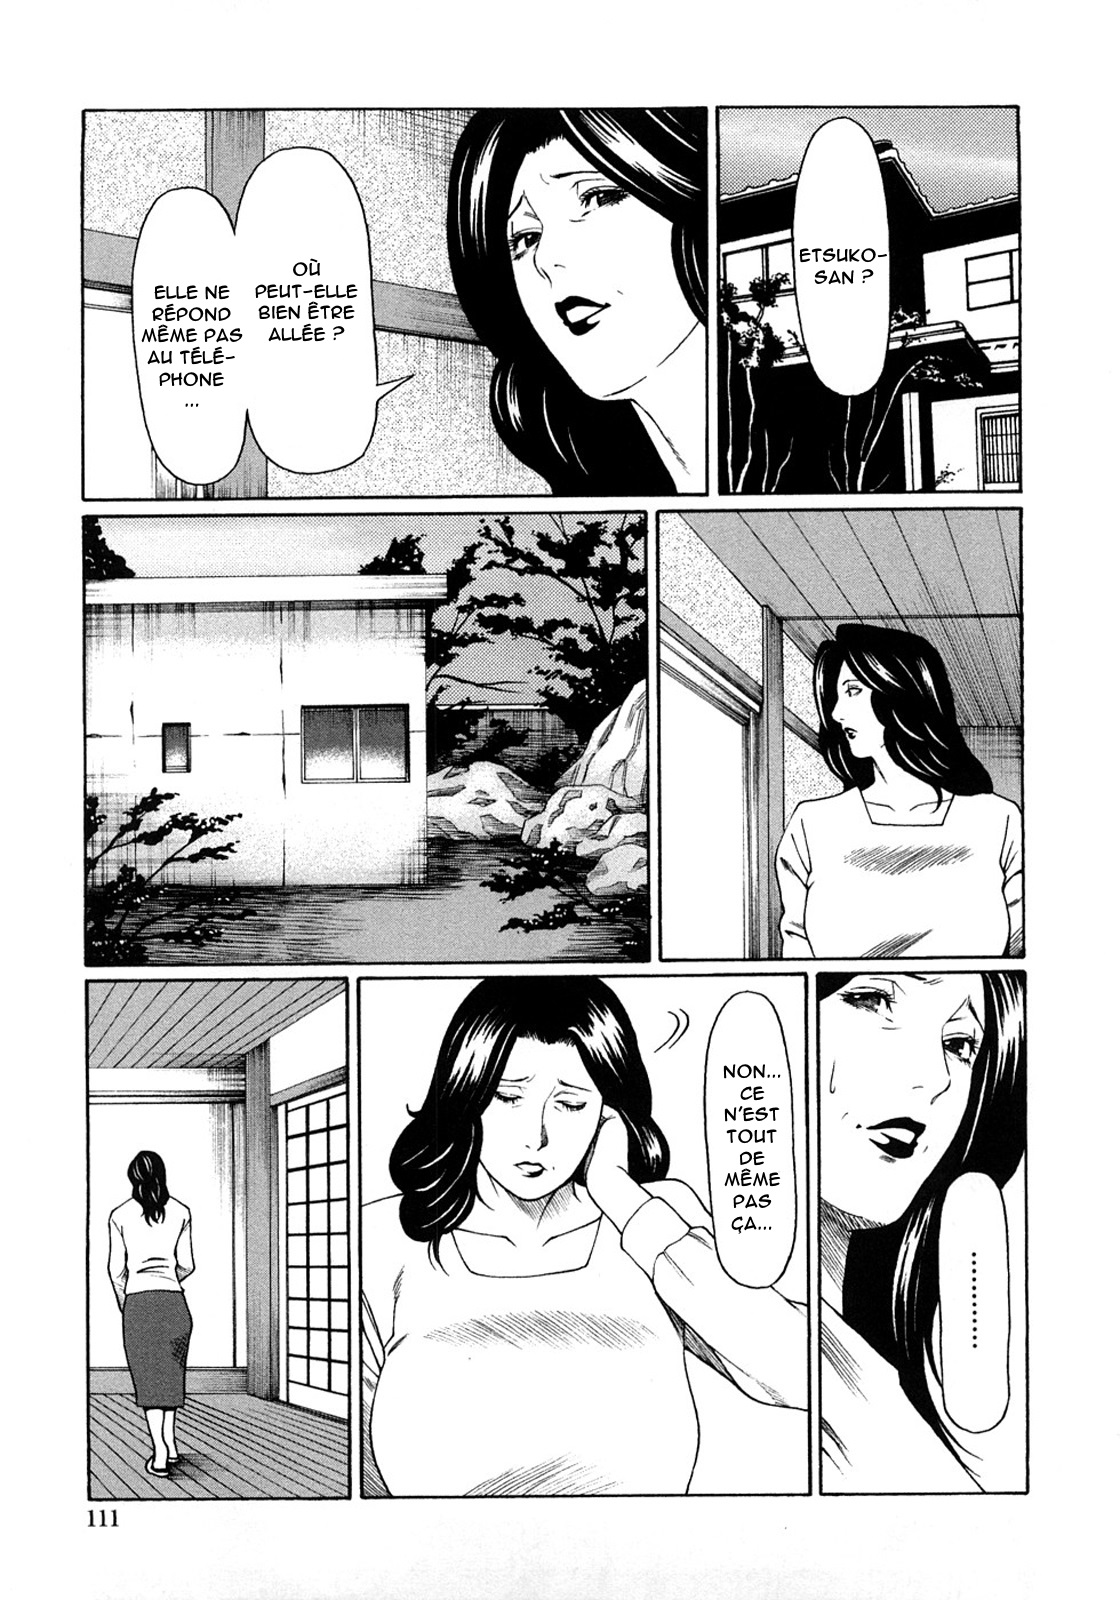 Etsuraku no Tobira - The Door of Sexual Pleasure numero d'image 109